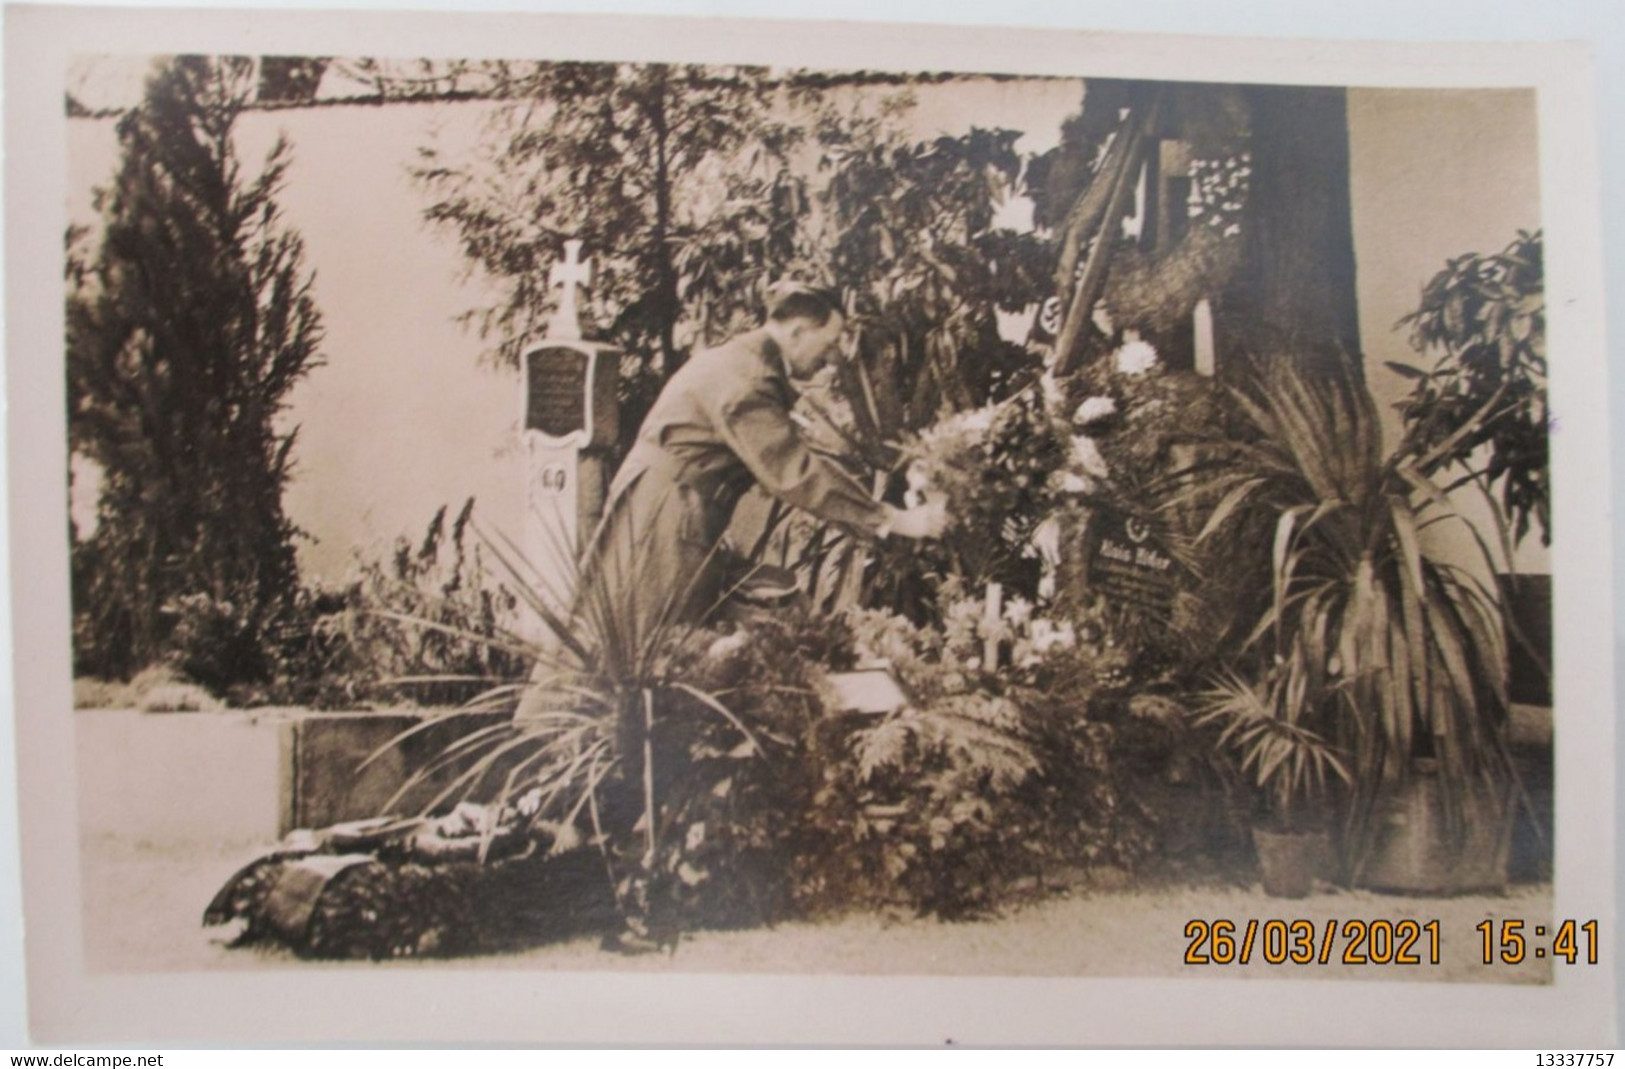 Hitlers Memoiren.:,Eltern,Geburtshaus in Braunau,Friedhof Leonding. Großdeutschland Sammelbilder 6,3x4,3 cm lesen RR